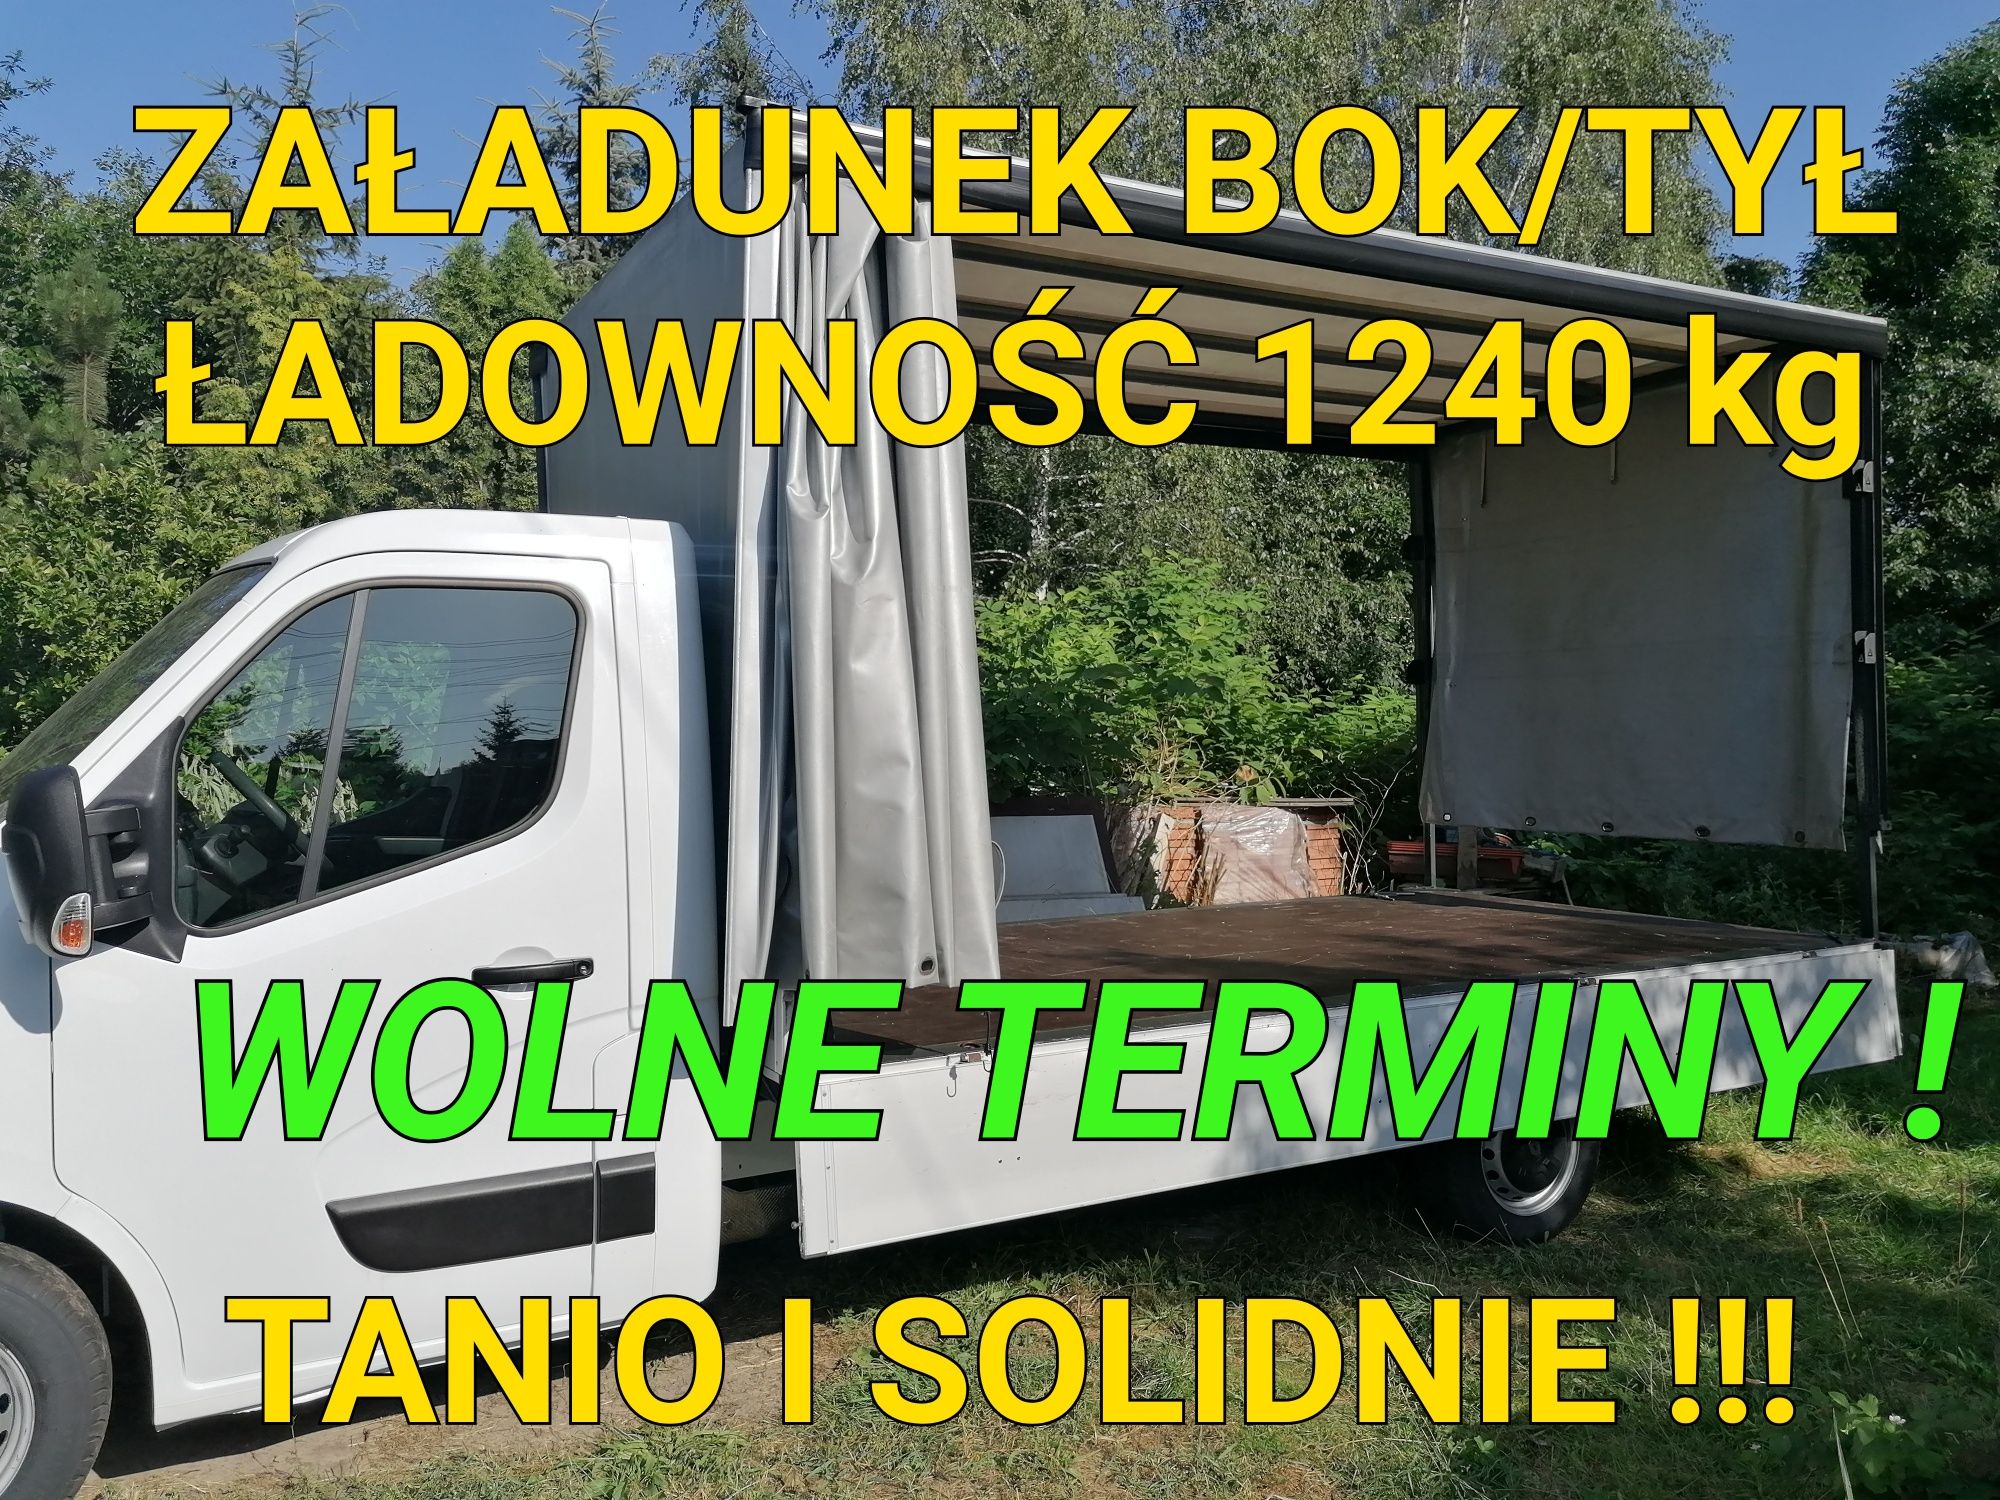 Przeprowadzki/WOLNE TERMINY/Transport-TANIO I SOLIDNIE-Atrak.CENY!!!